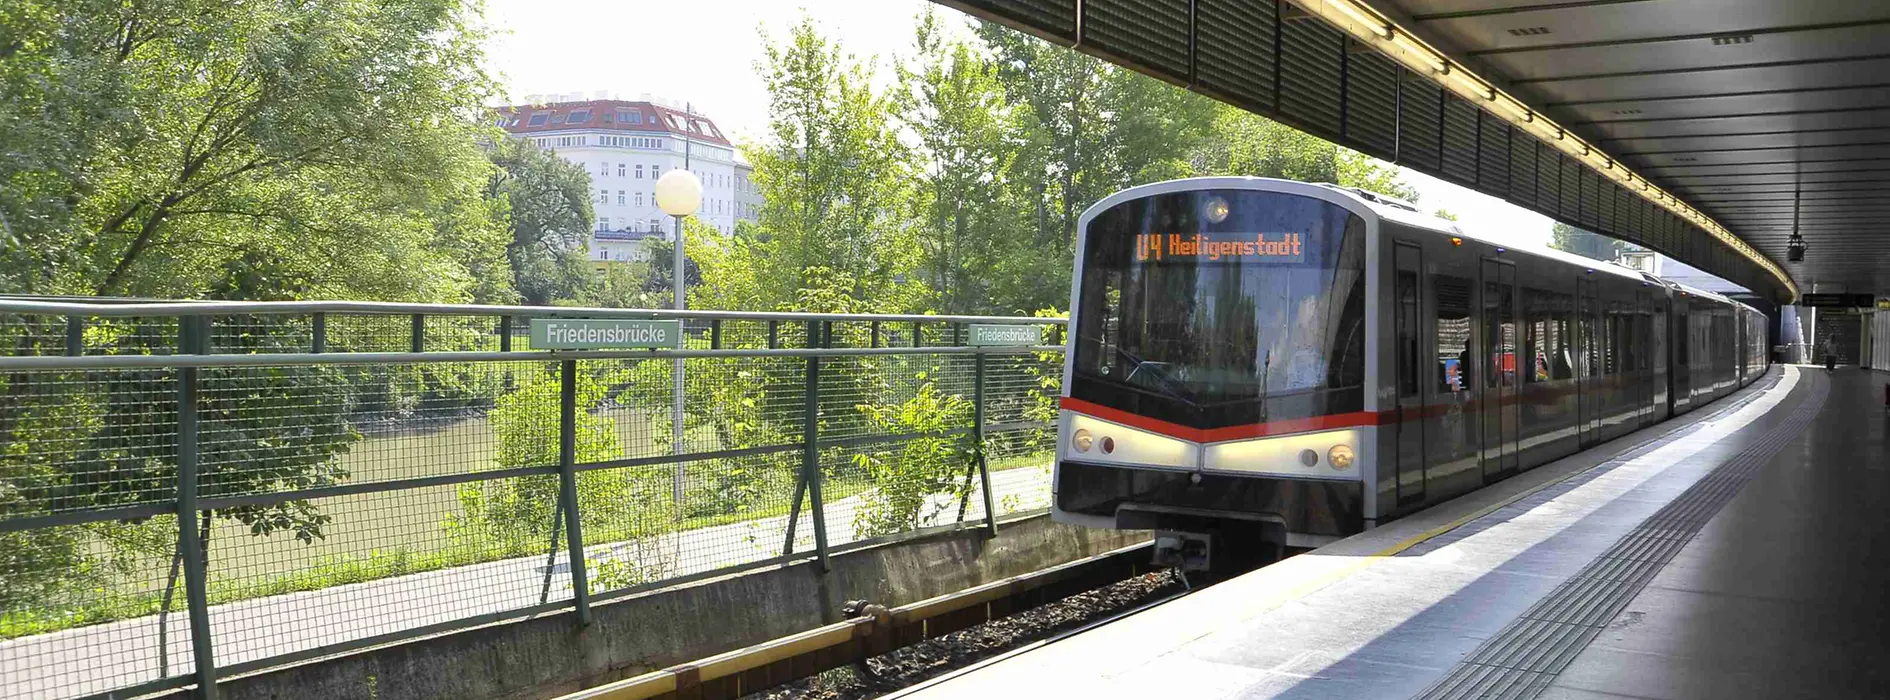 Stația de metrou Friedensbrücke